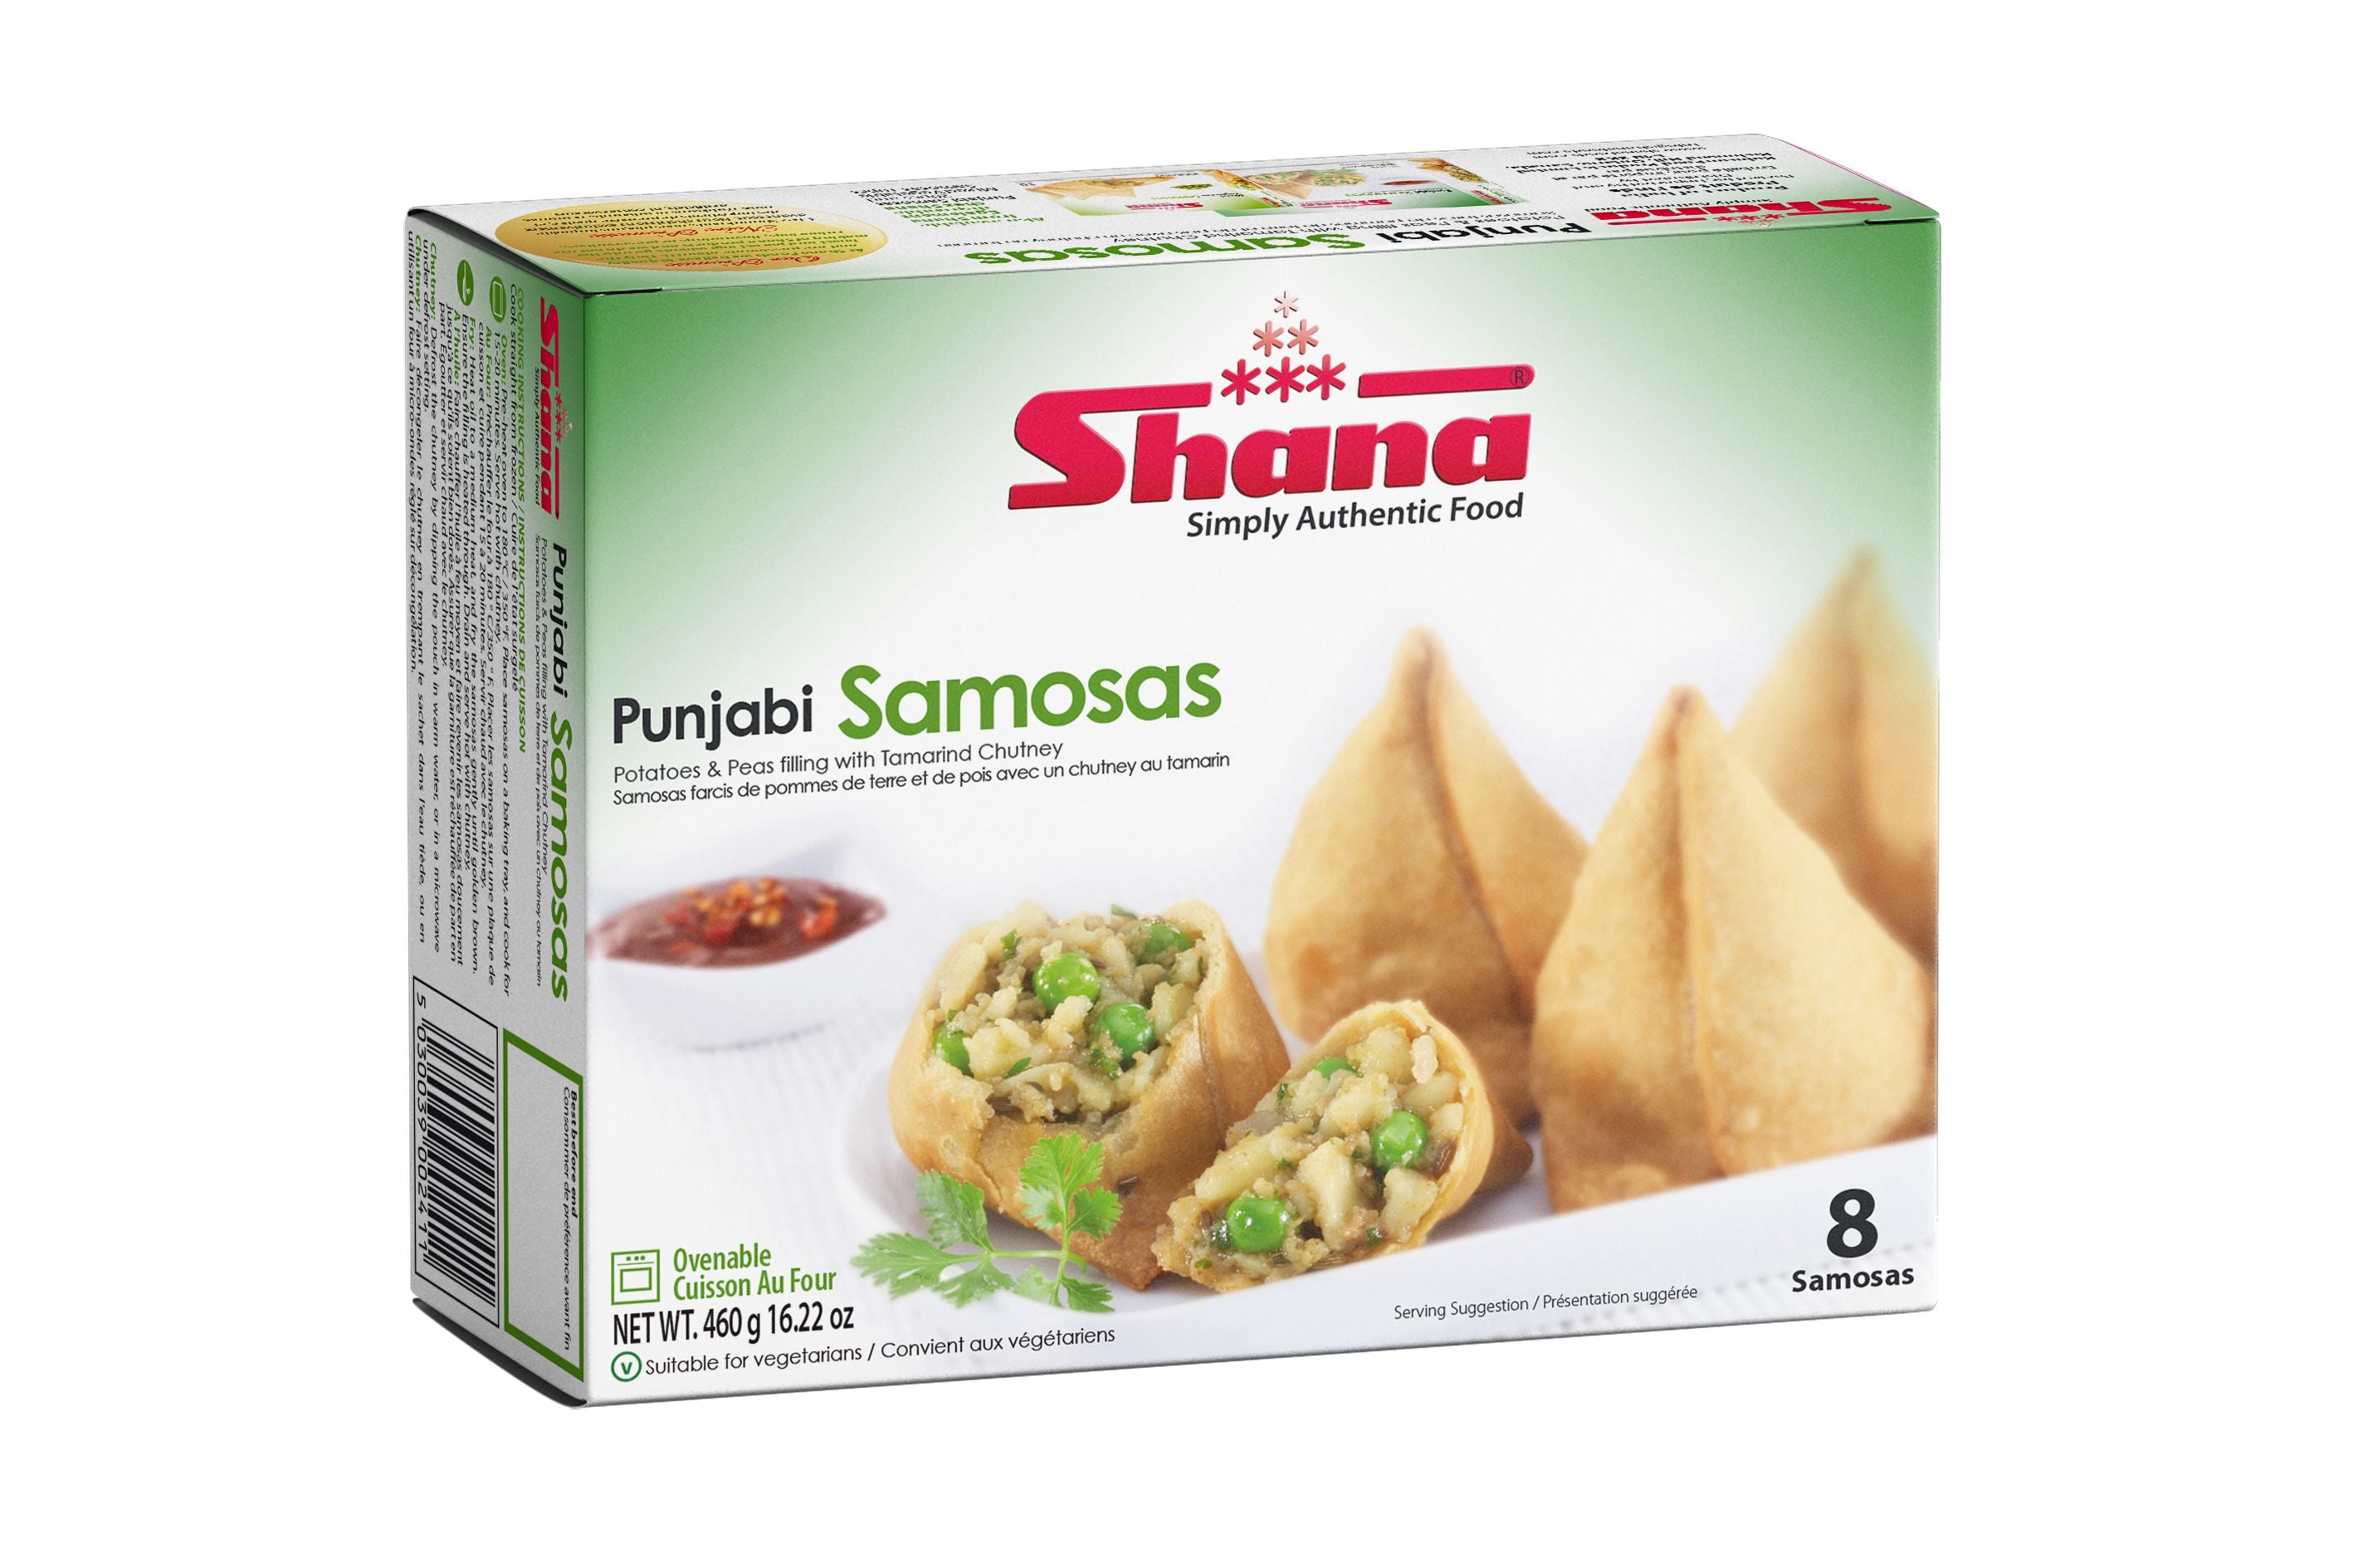 Shana - Mini Samosa Variety Pack - 30ct